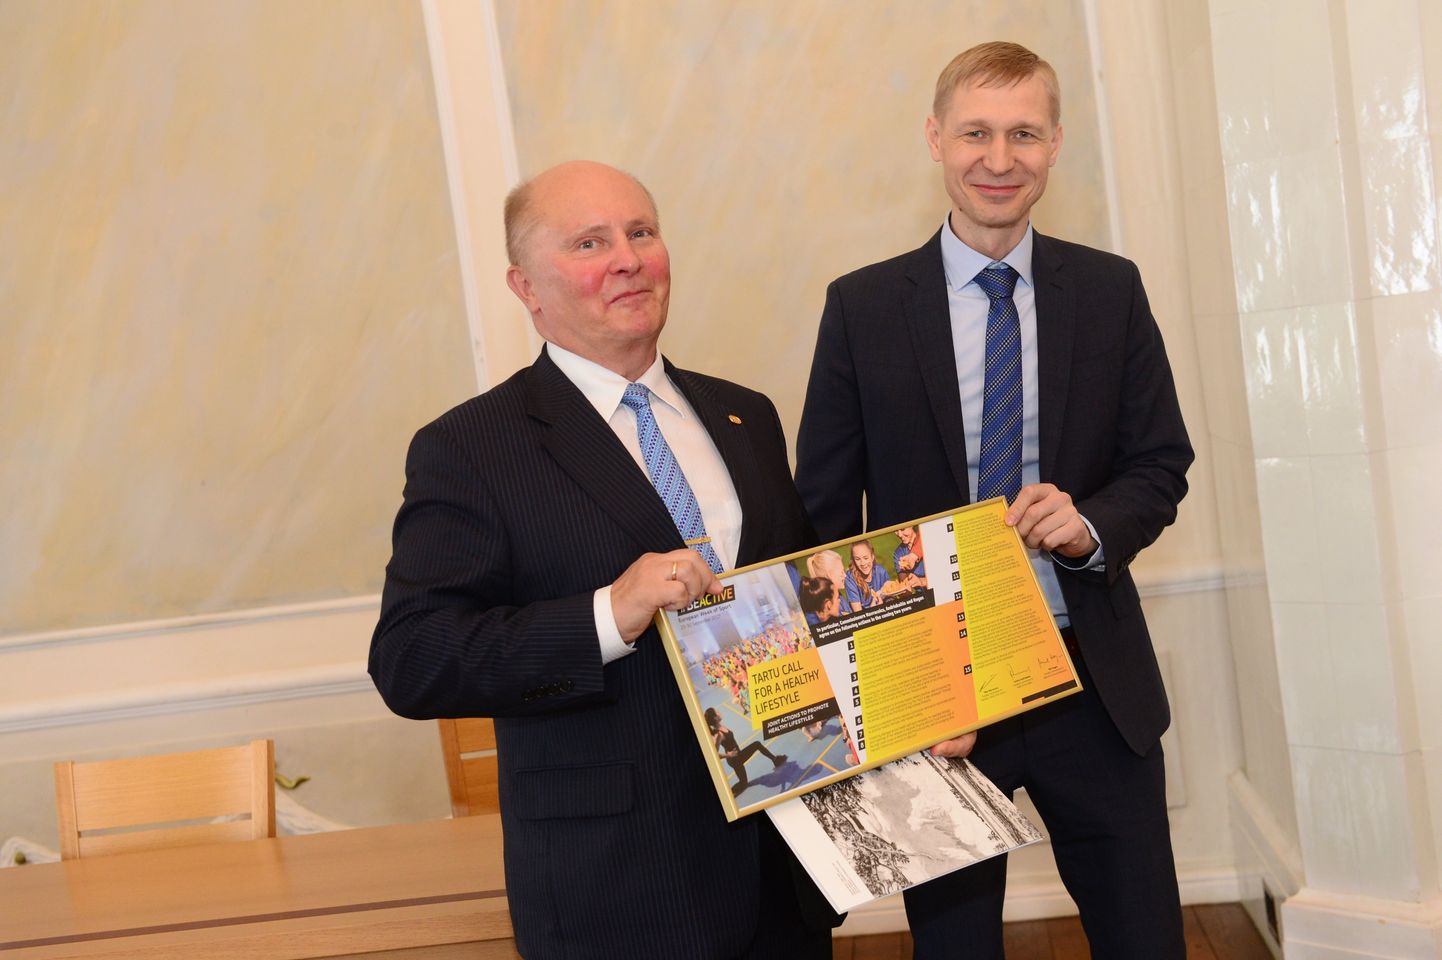 Kultuuriministeeriumi spordi asekantsler Tarvi Pürn andis Tartu aselinnapeale Madis Lepajõele üle EL spordiministrite kohtumisel allkirjastatud Tartu deklaratsiooni.